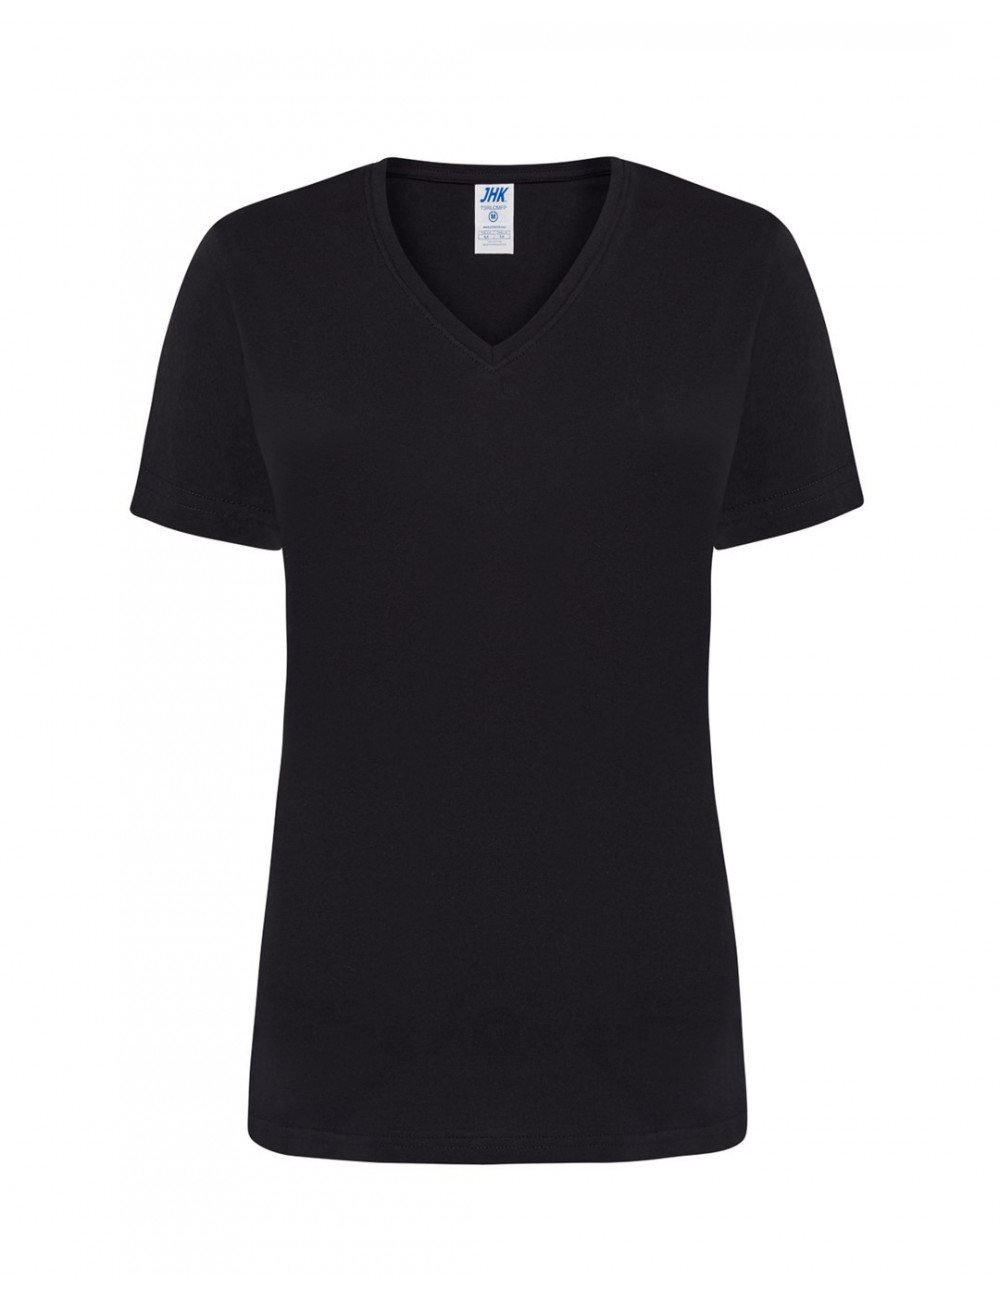 T-shirt for women tsrl cmfp lady comfort v-neck black Jhk